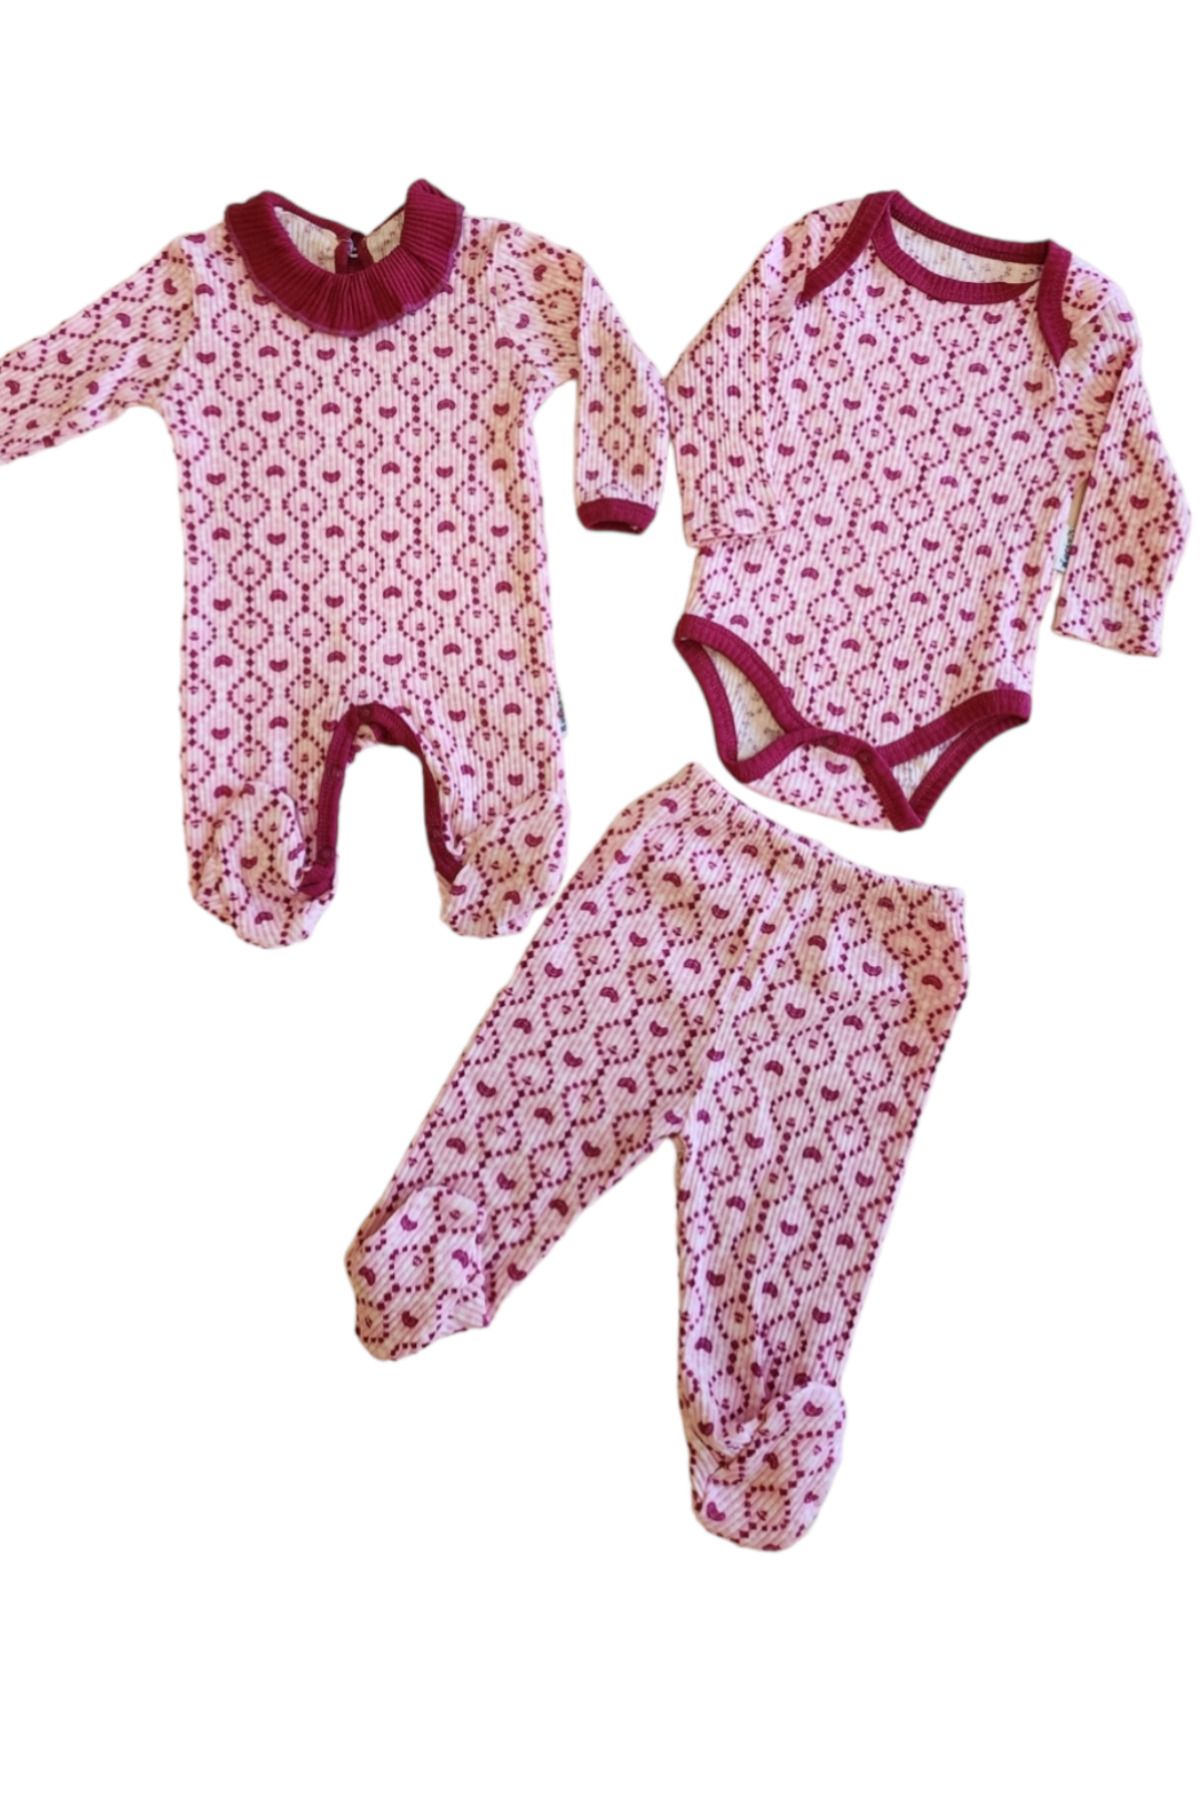 Necix's Kız Bebek Tulumlu Patikli Pantolonlu Çıtçıtlı Badili 3'lü Set